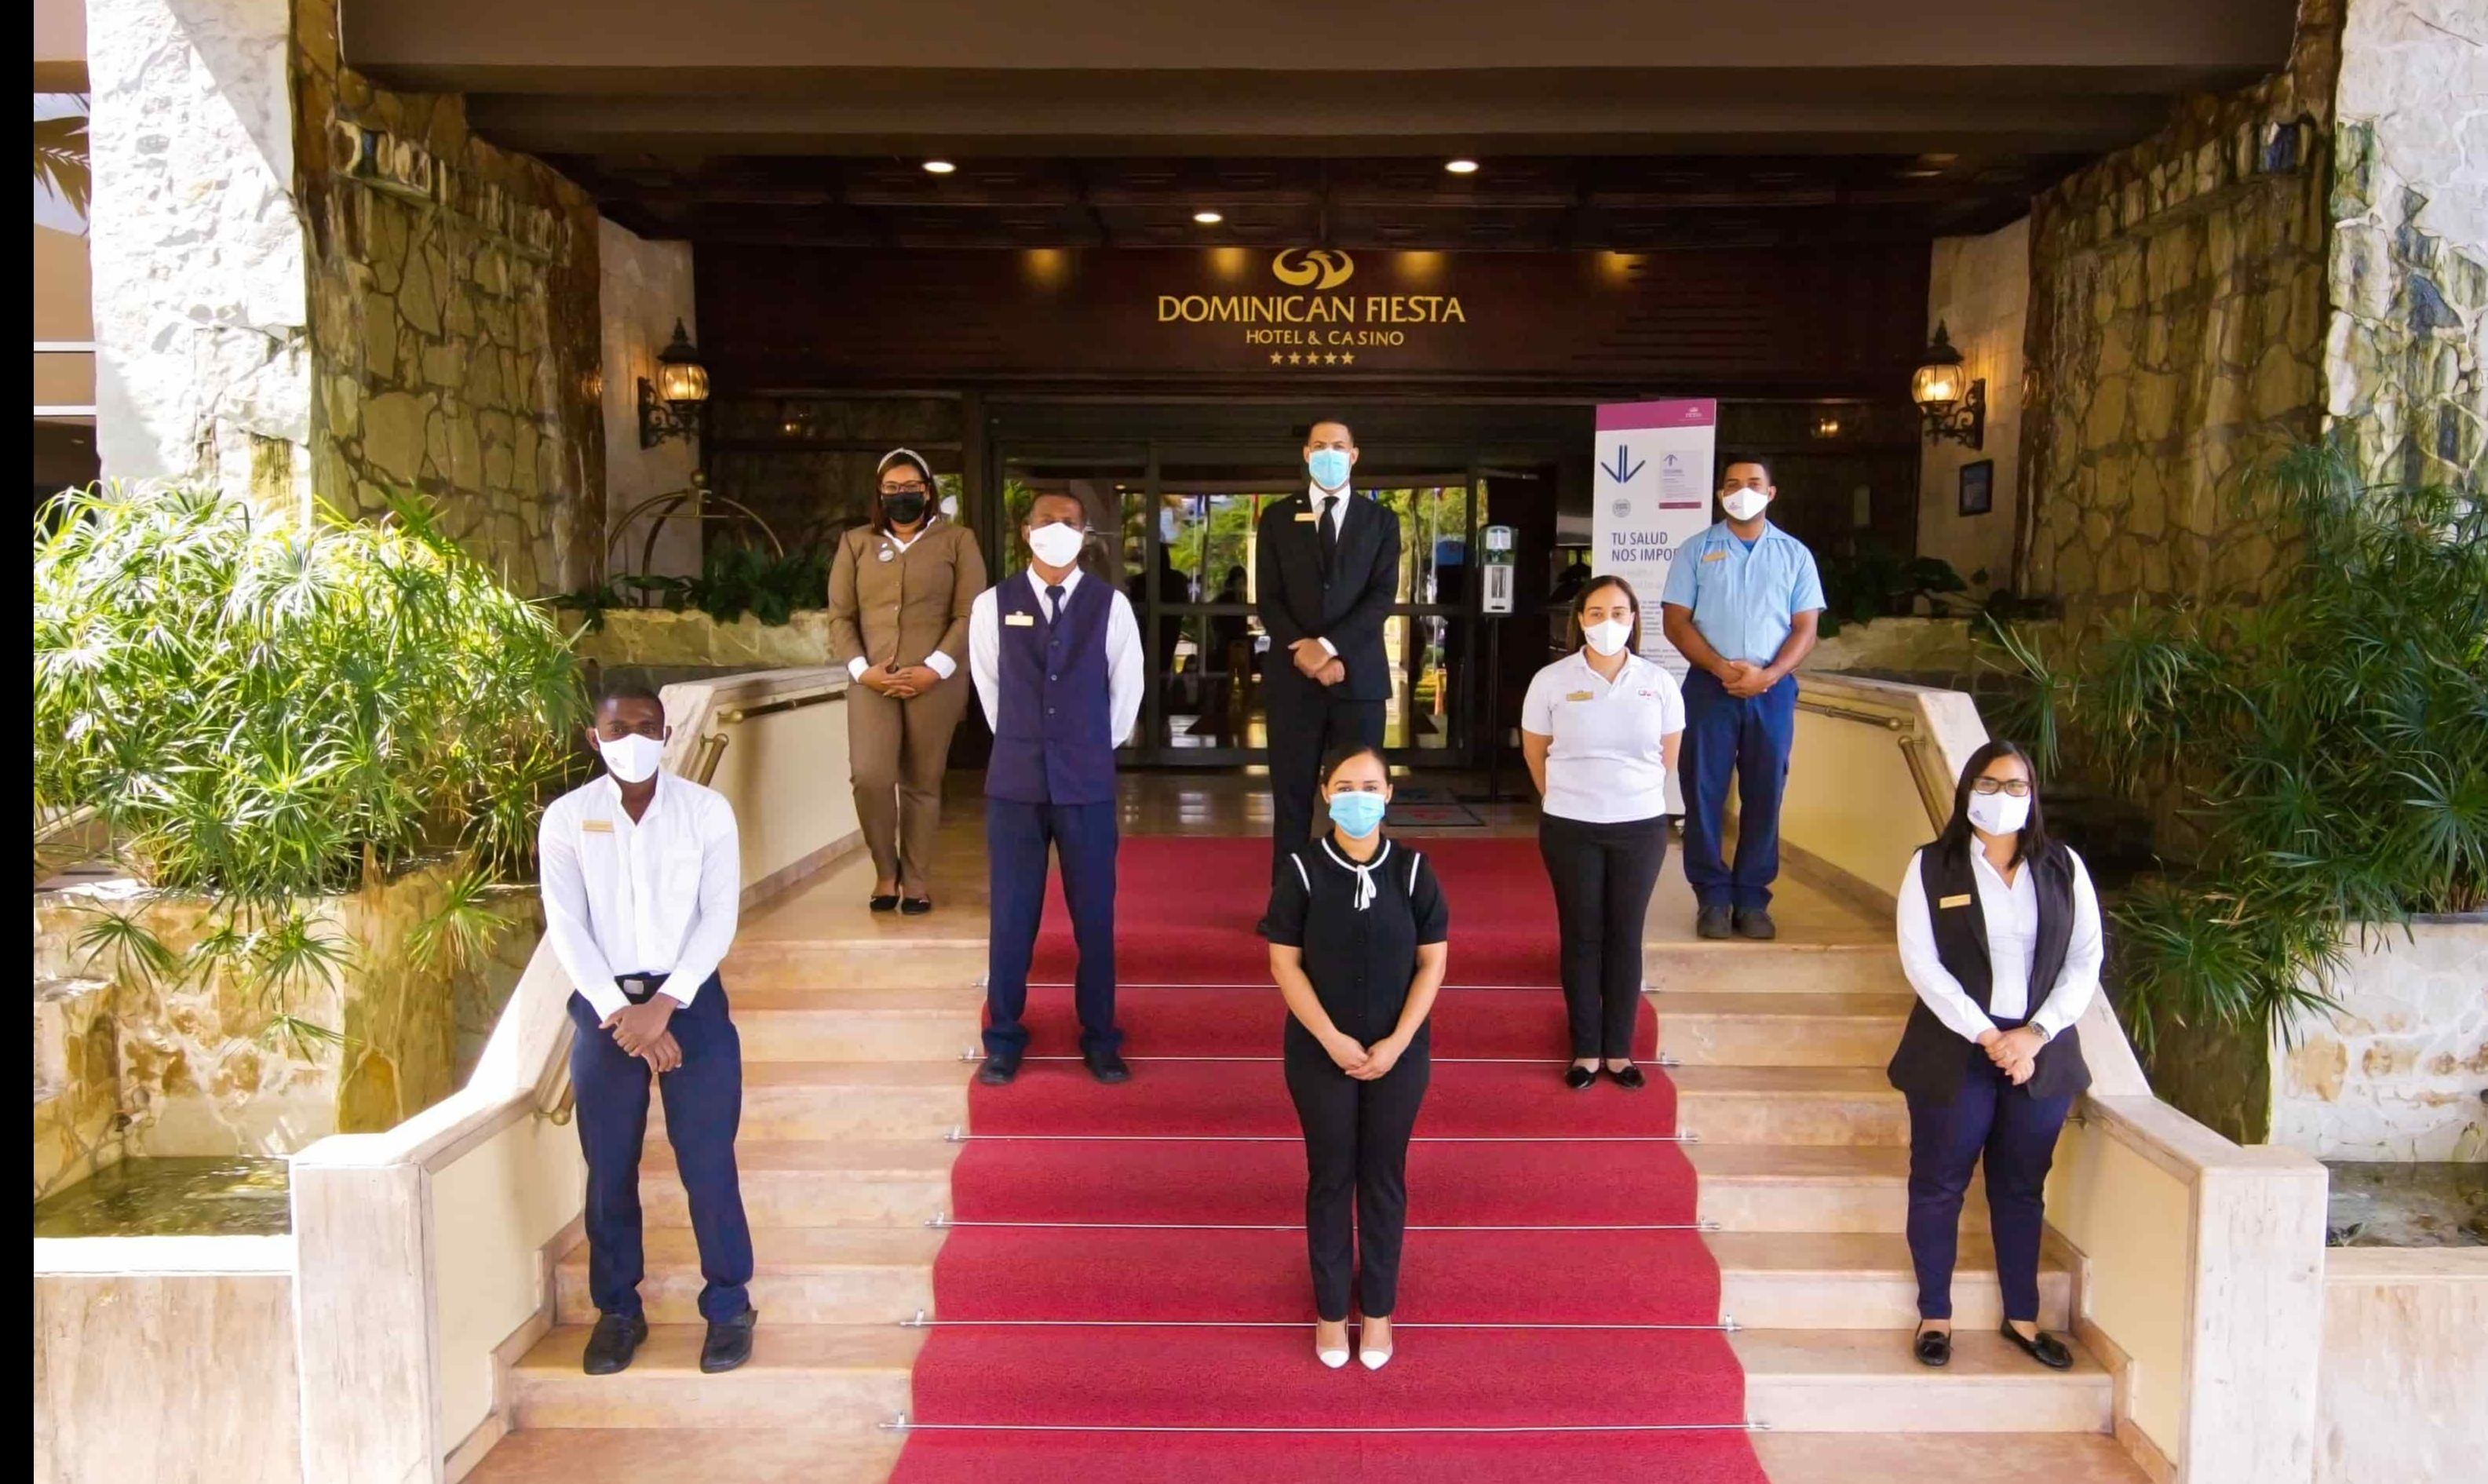 El Dominican Fiesta Hotel & Casino reabre sus puertas y da a conocer protocolos post COVID -19.